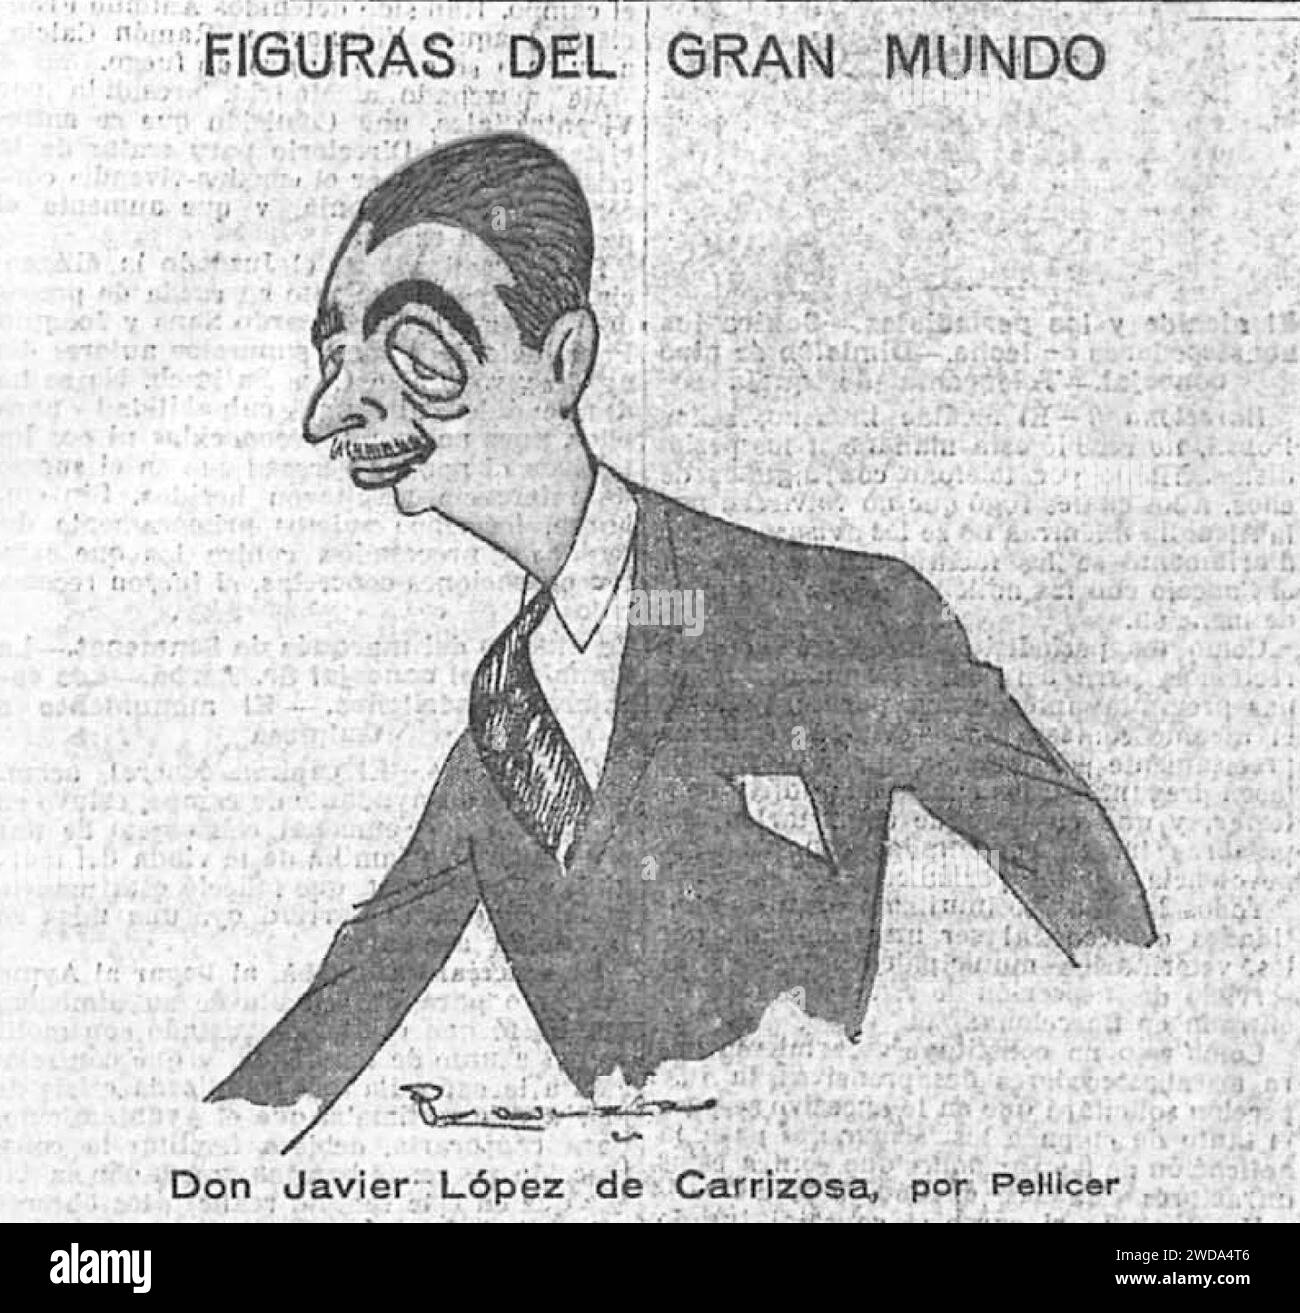 1924-08-09, El Imparcial, Figuras del gran mundo, Javier López de Carrizosa, Pellicer. Stock Photo